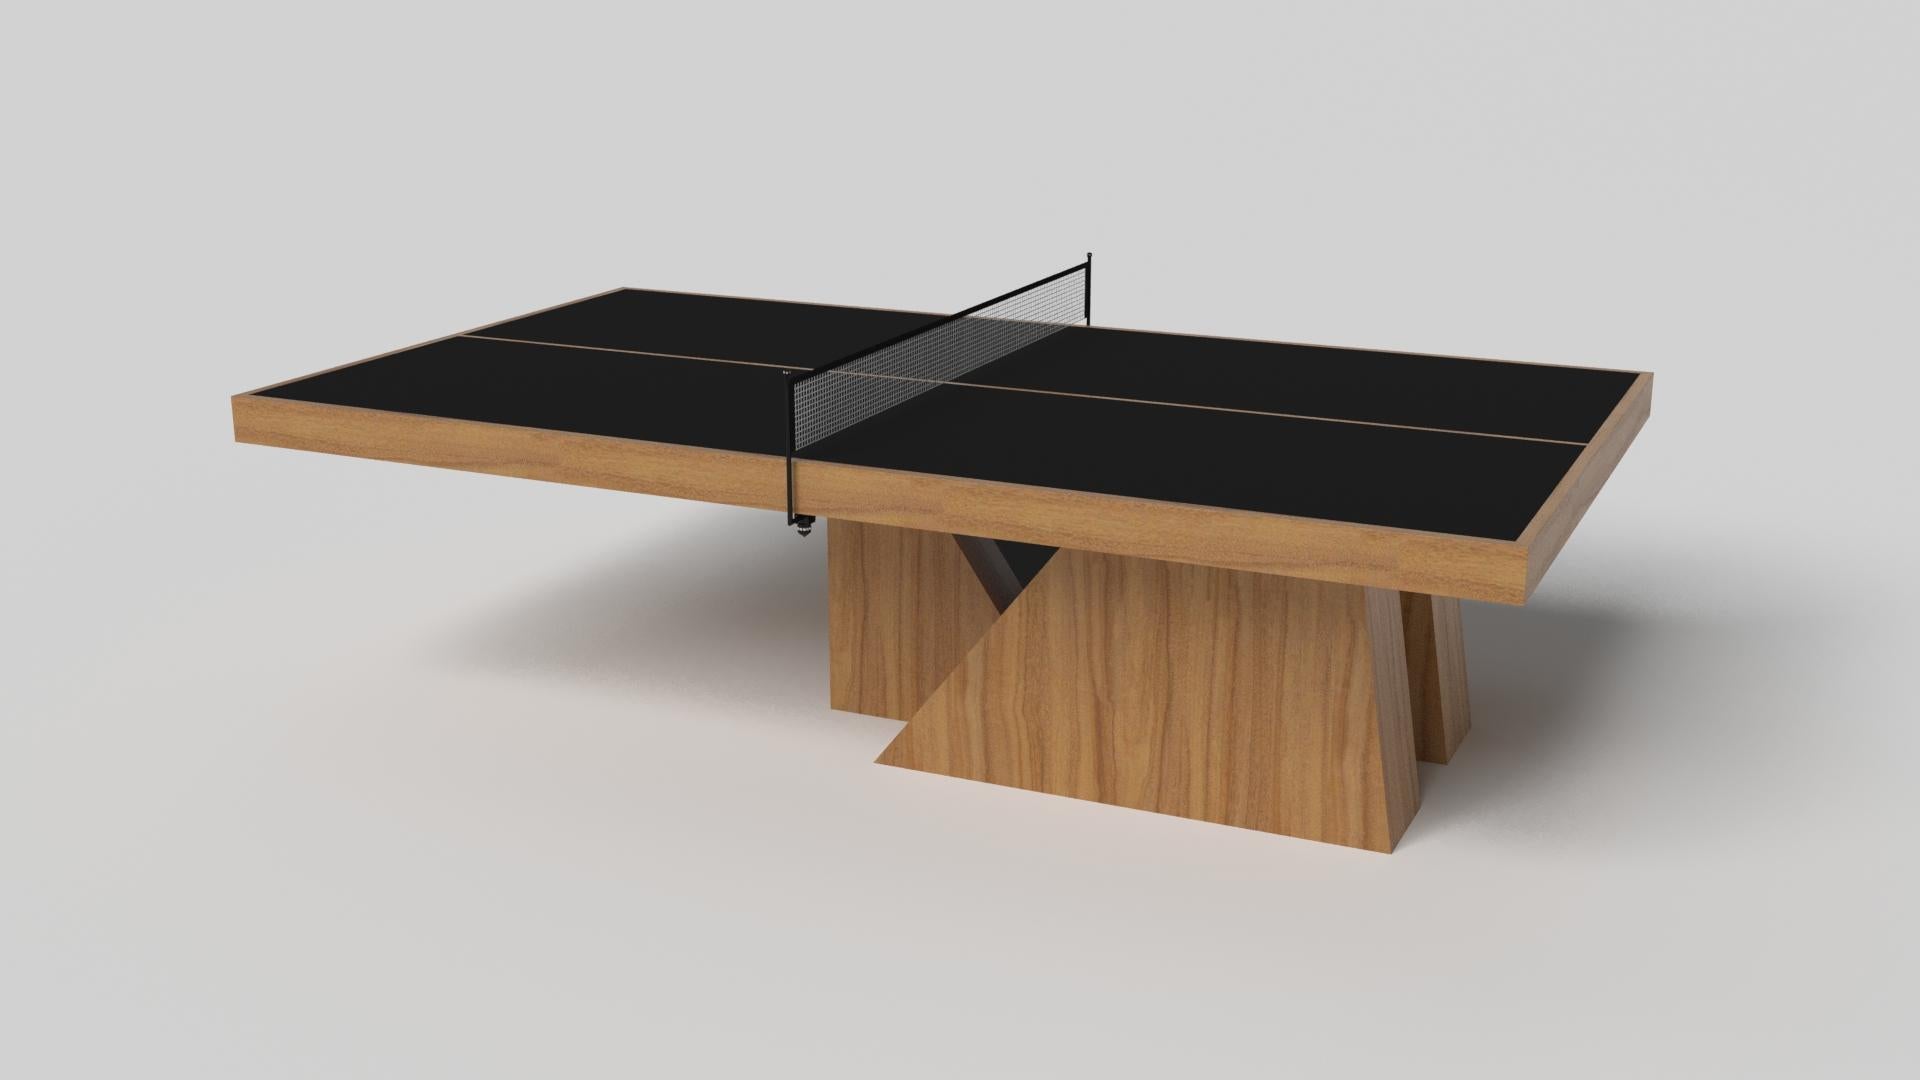 Ein asymmetrischer Sockel schafft eine frei schwebende Silhouette, die den Stilt-Tischtennistisch in Chrom mit Nussbaum zu einer überzeugenden, zeitgenössischen Ergänzung für das moderne Zuhause macht. Dieser luxuriöse, handgefertigte Spieltisch aus